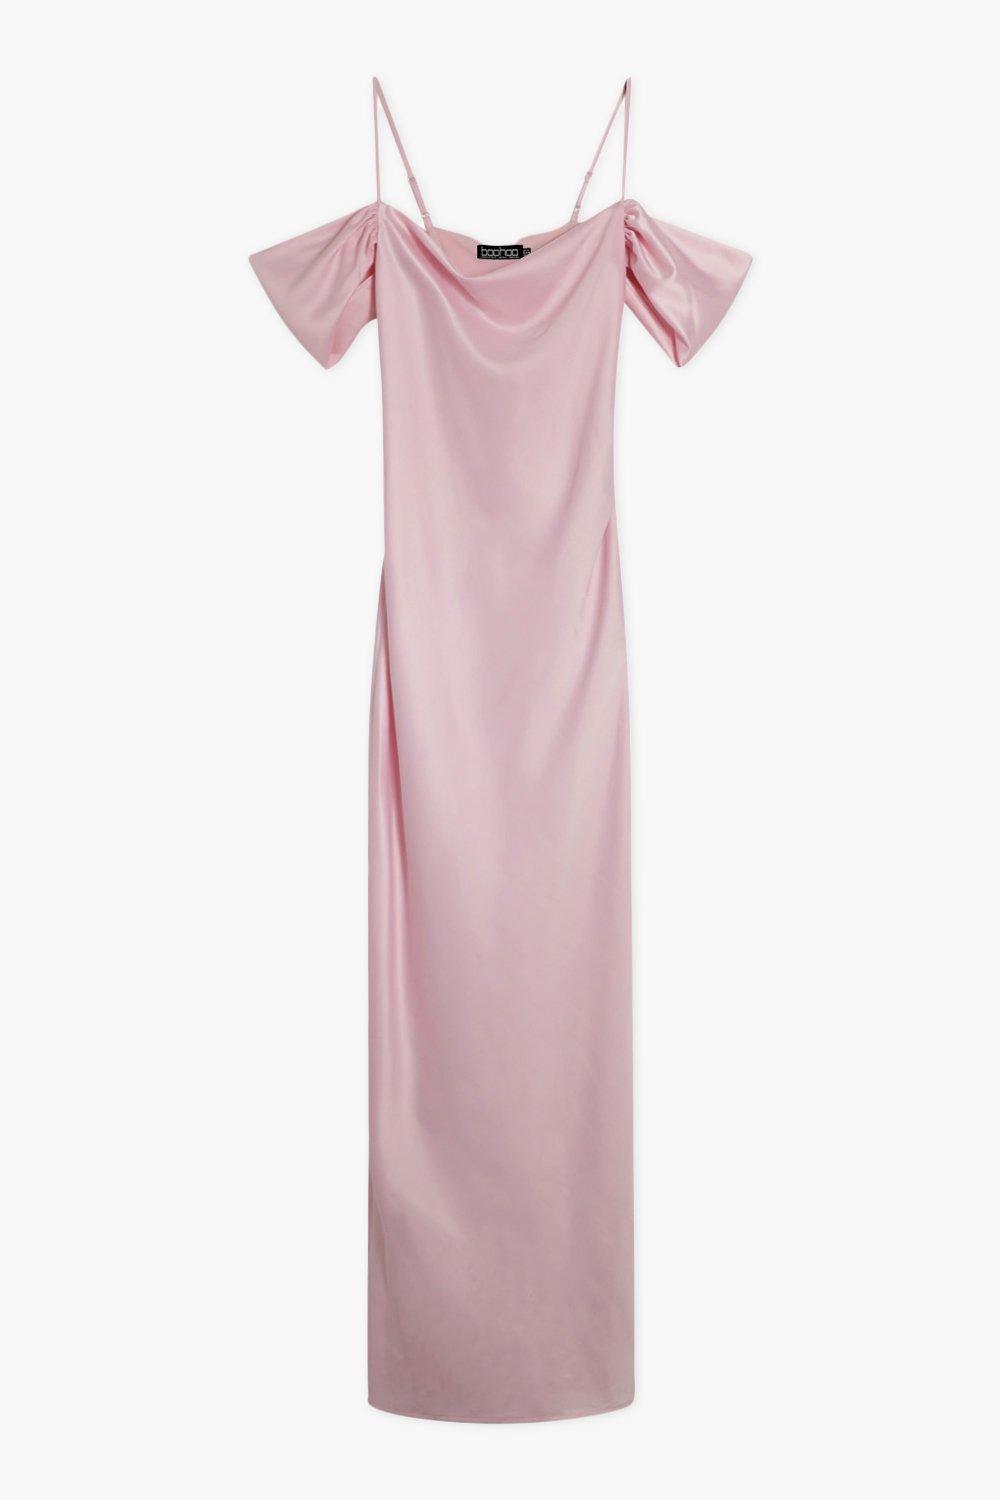 Missguided Pink Satin Cold Shoulder Shift Dress, $27